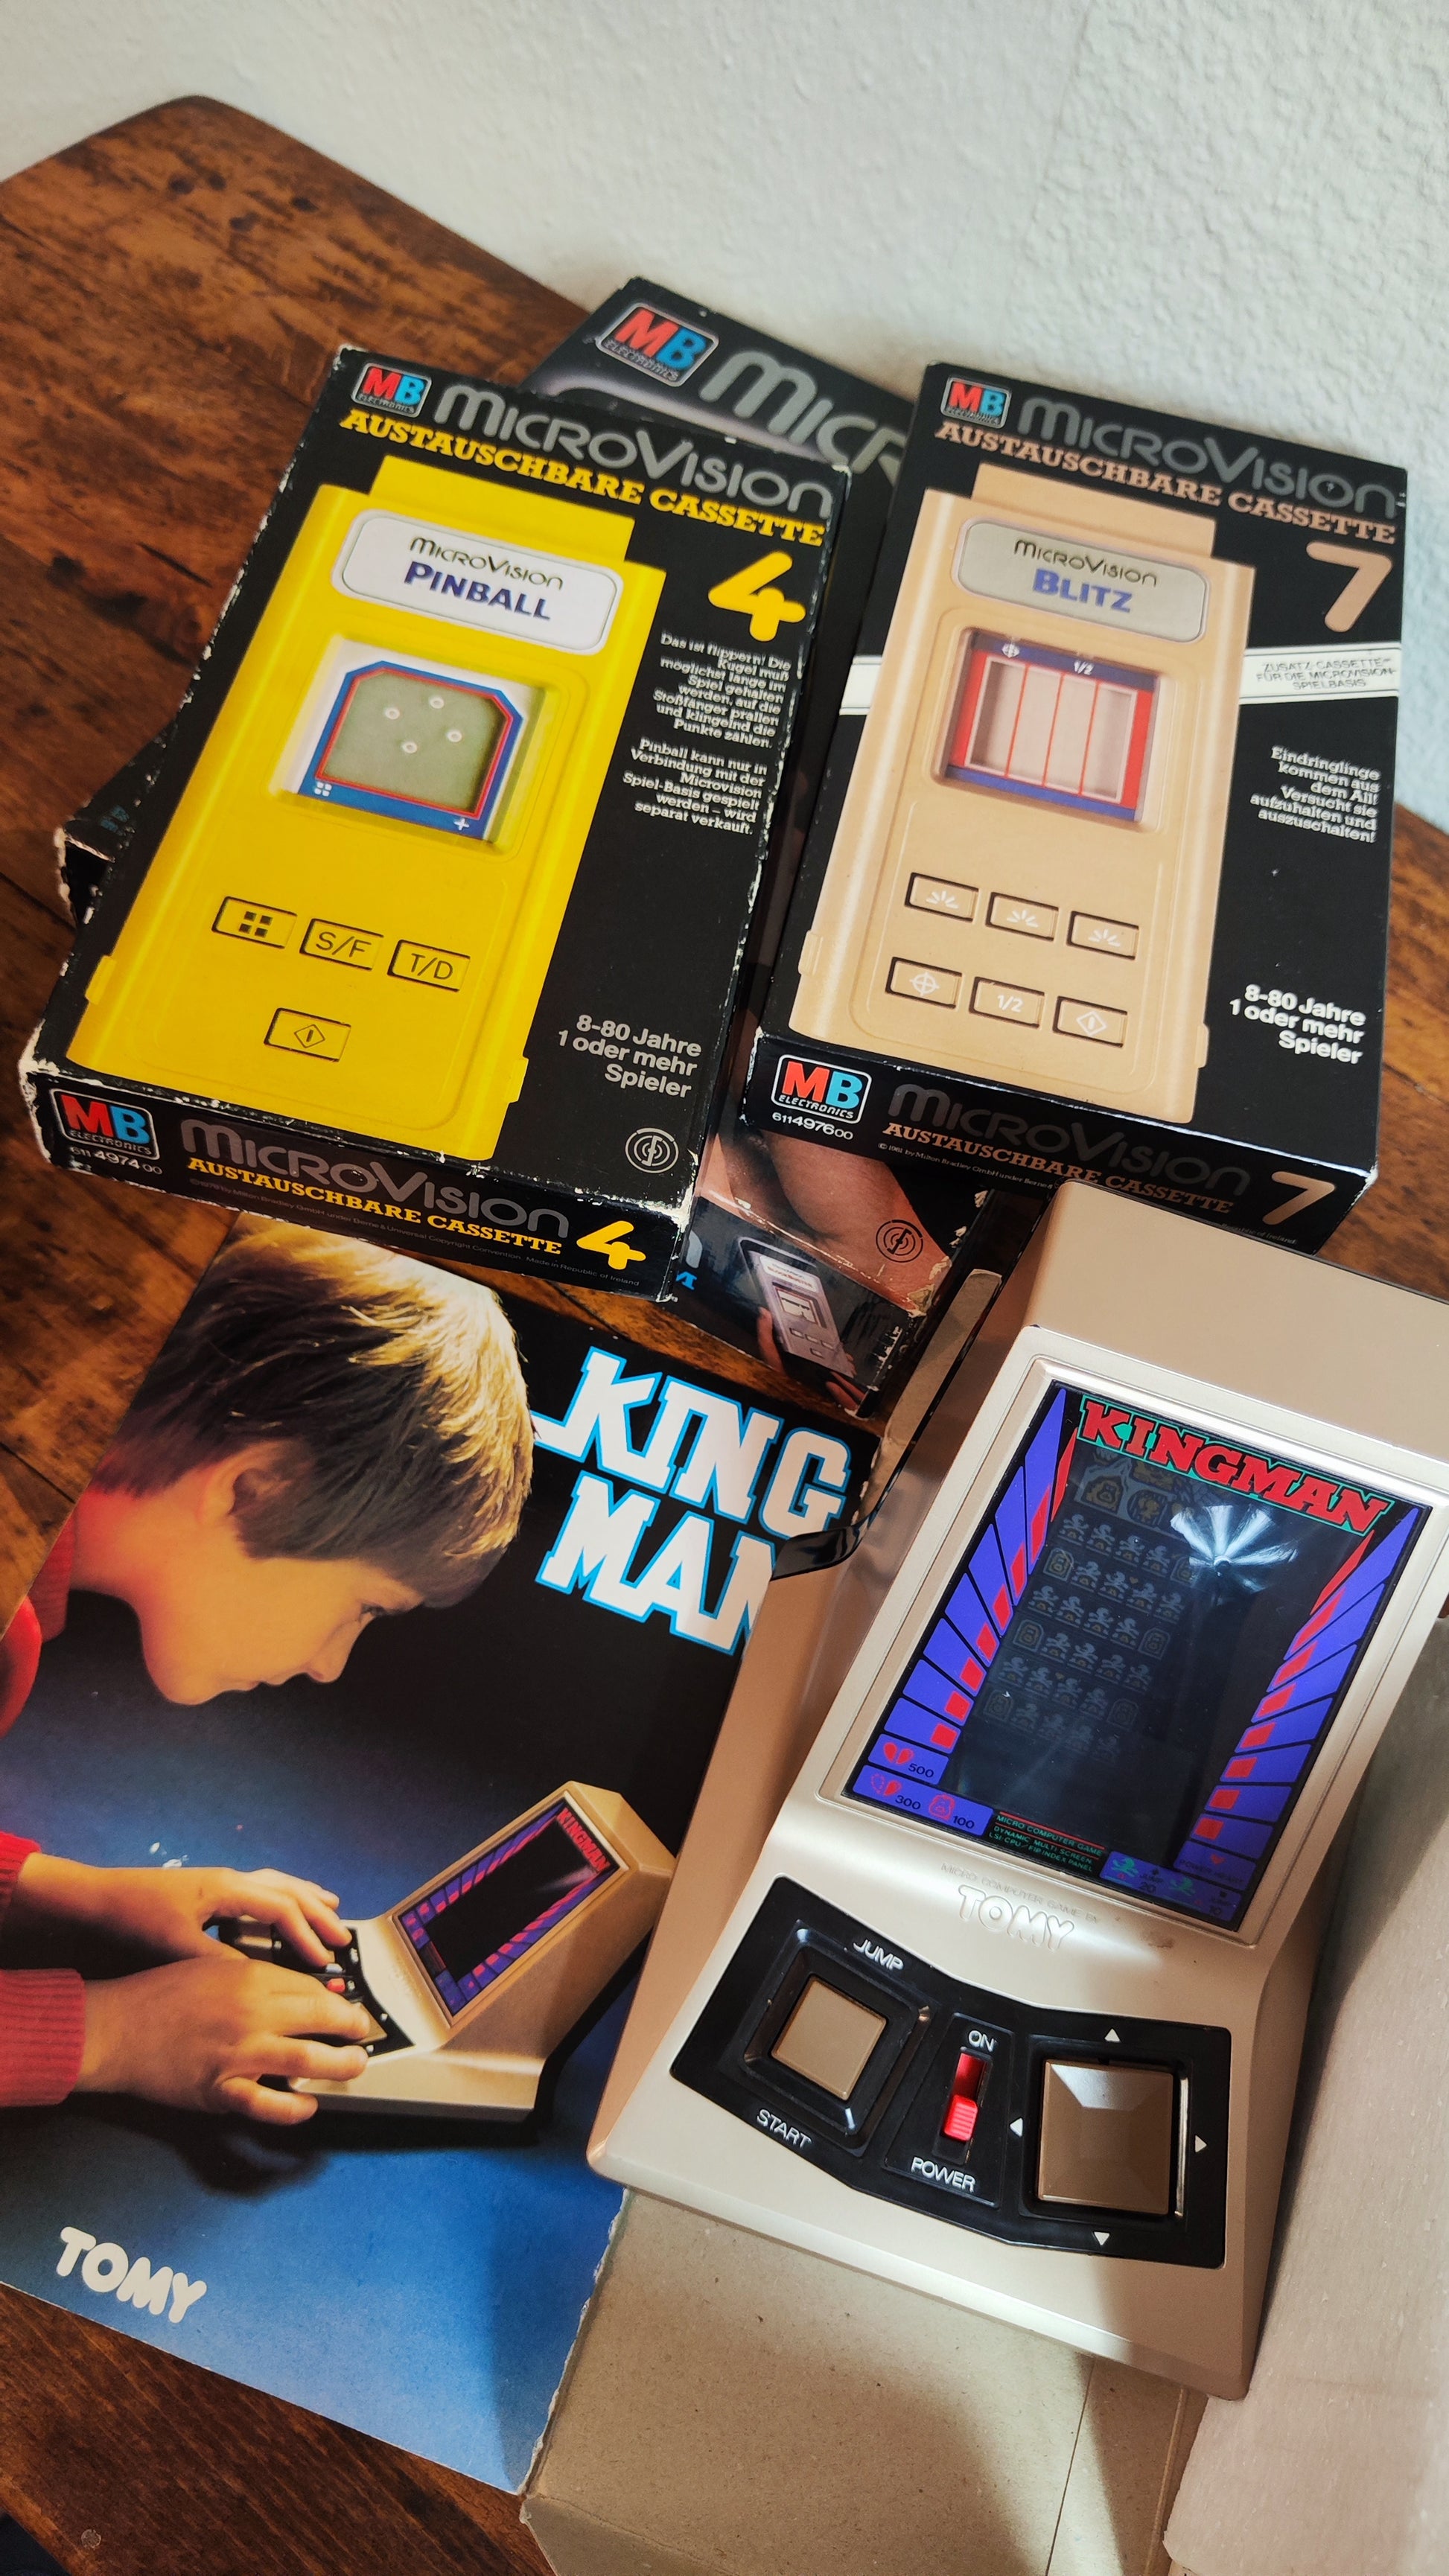 Computerspiele Konvolut "Kingman" & "MicroVision" aus den 1970er/80er Jahren - aus Bares für Rares 2024 - Esther-Ollick.shop